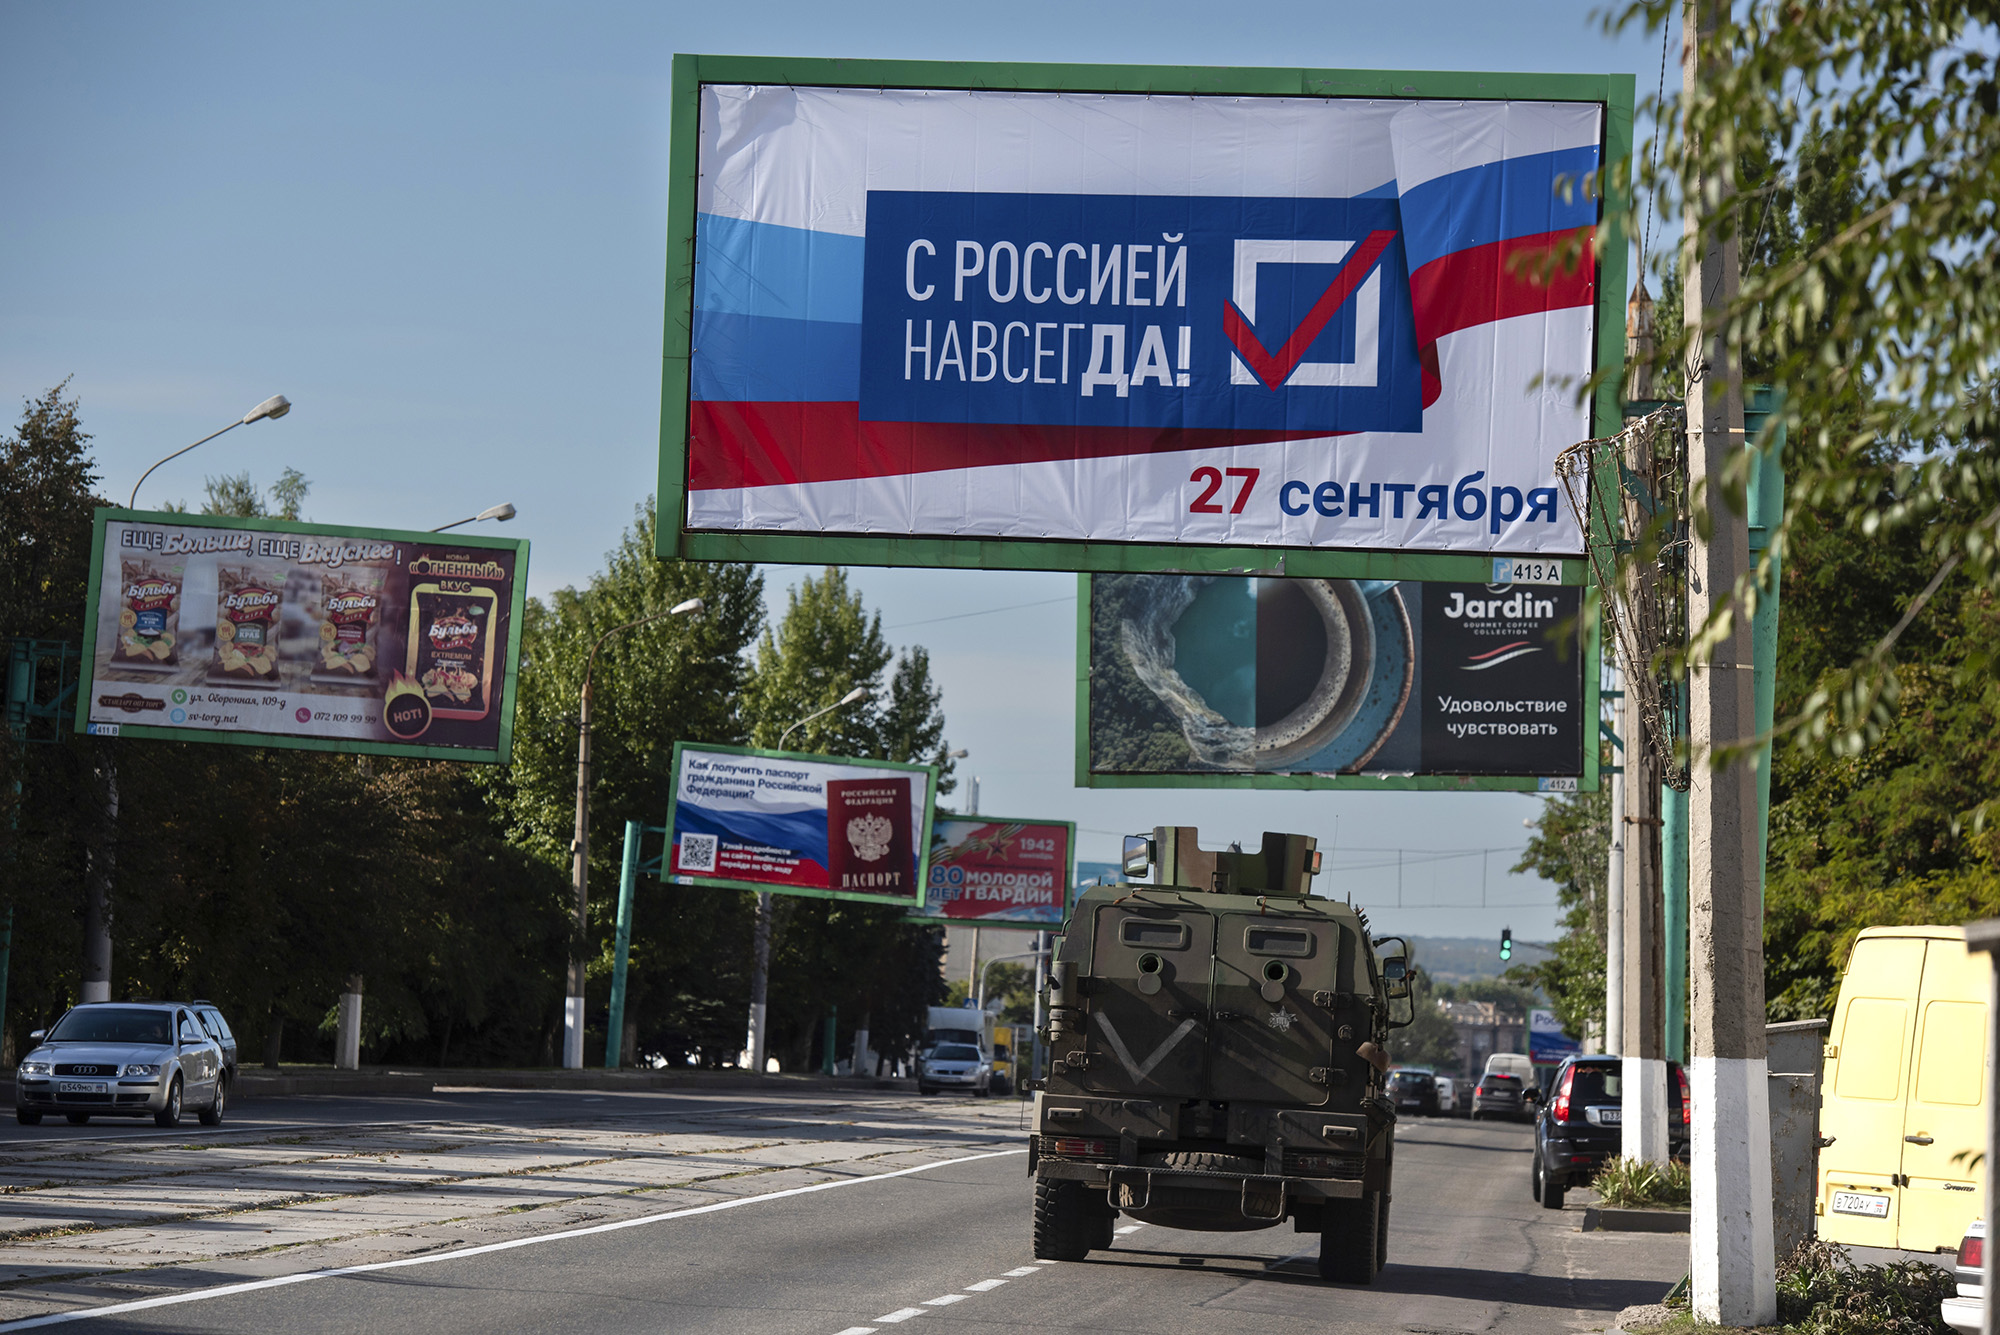 Un véhicule militaire roule le long d'une rue avec un panneau d'affichage "Avec la Russie pour toujours, le 27 septembre" avant un référendum à Louhansk, dans l'est de l'Ukraine, le 22 septembre.